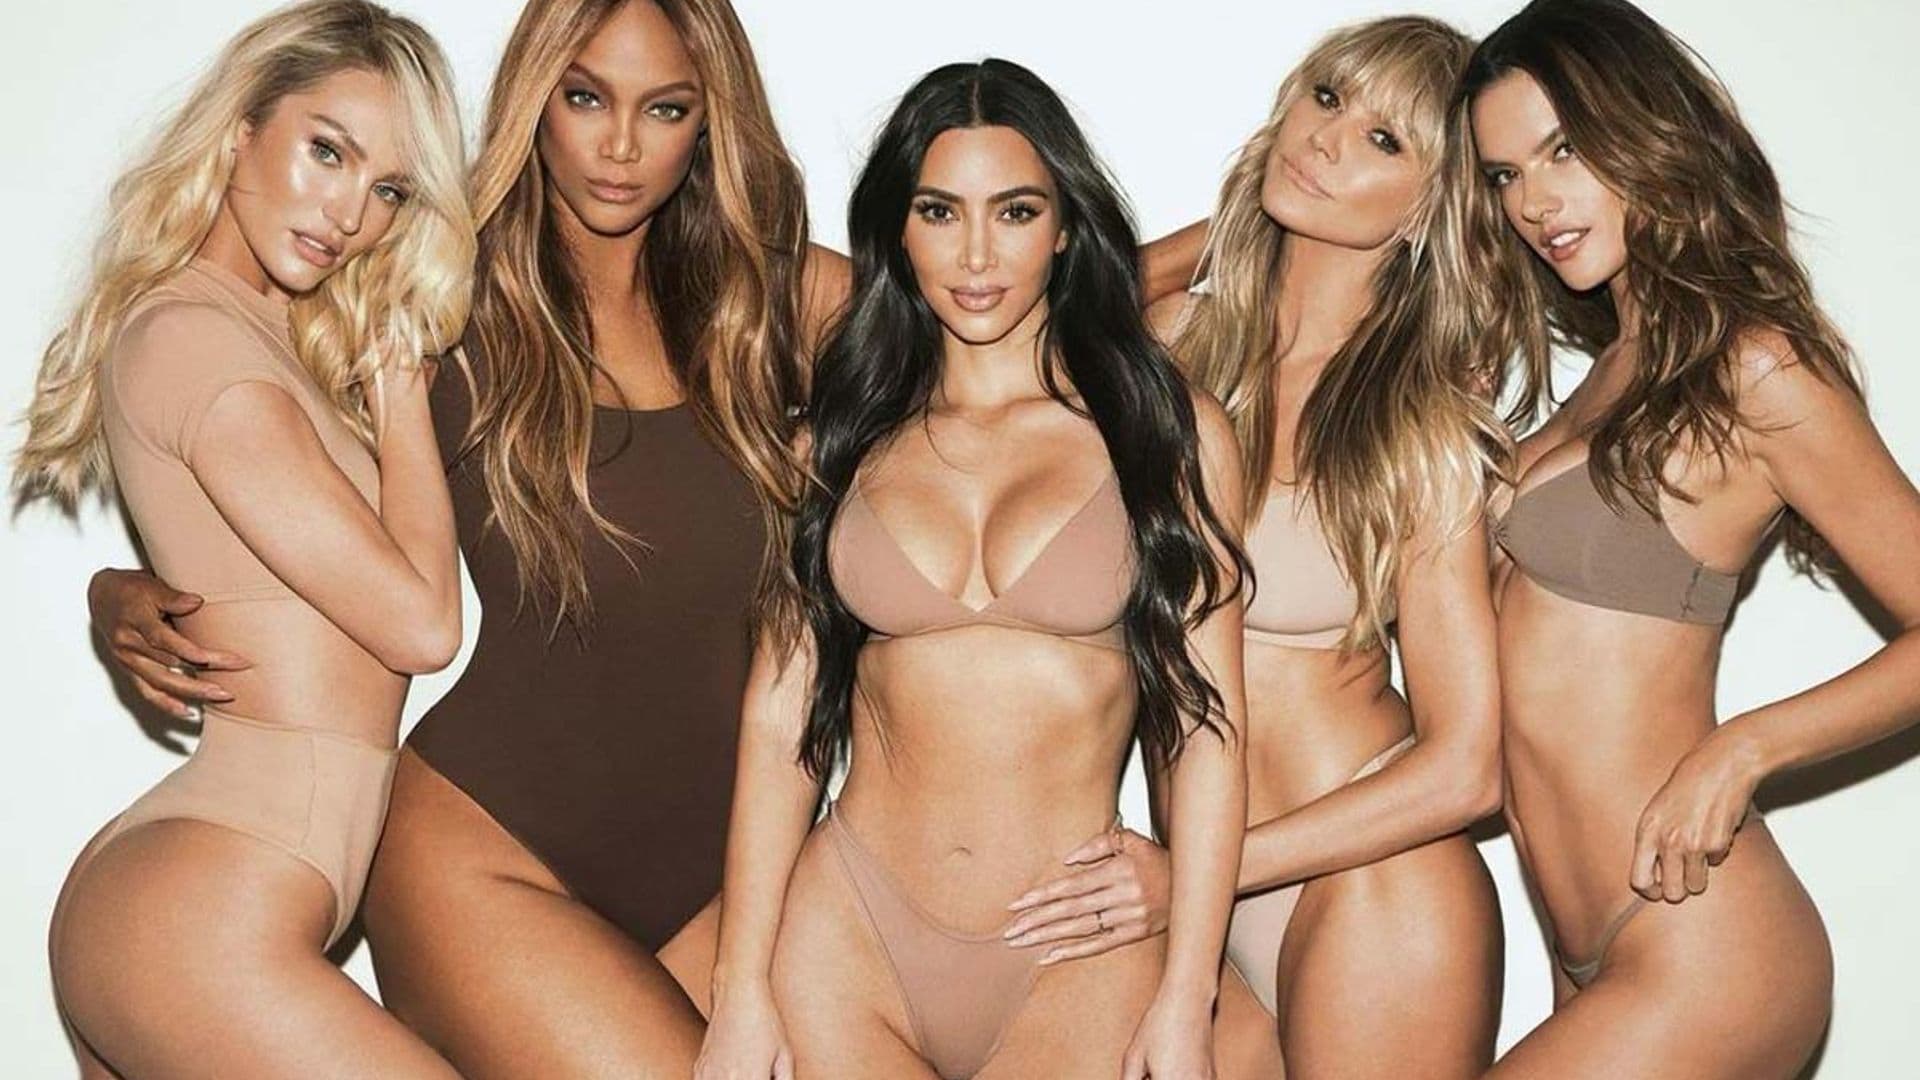 La última campaña de lencería dirigida por Kim Kardashian se ha hecho viral por una genial razón